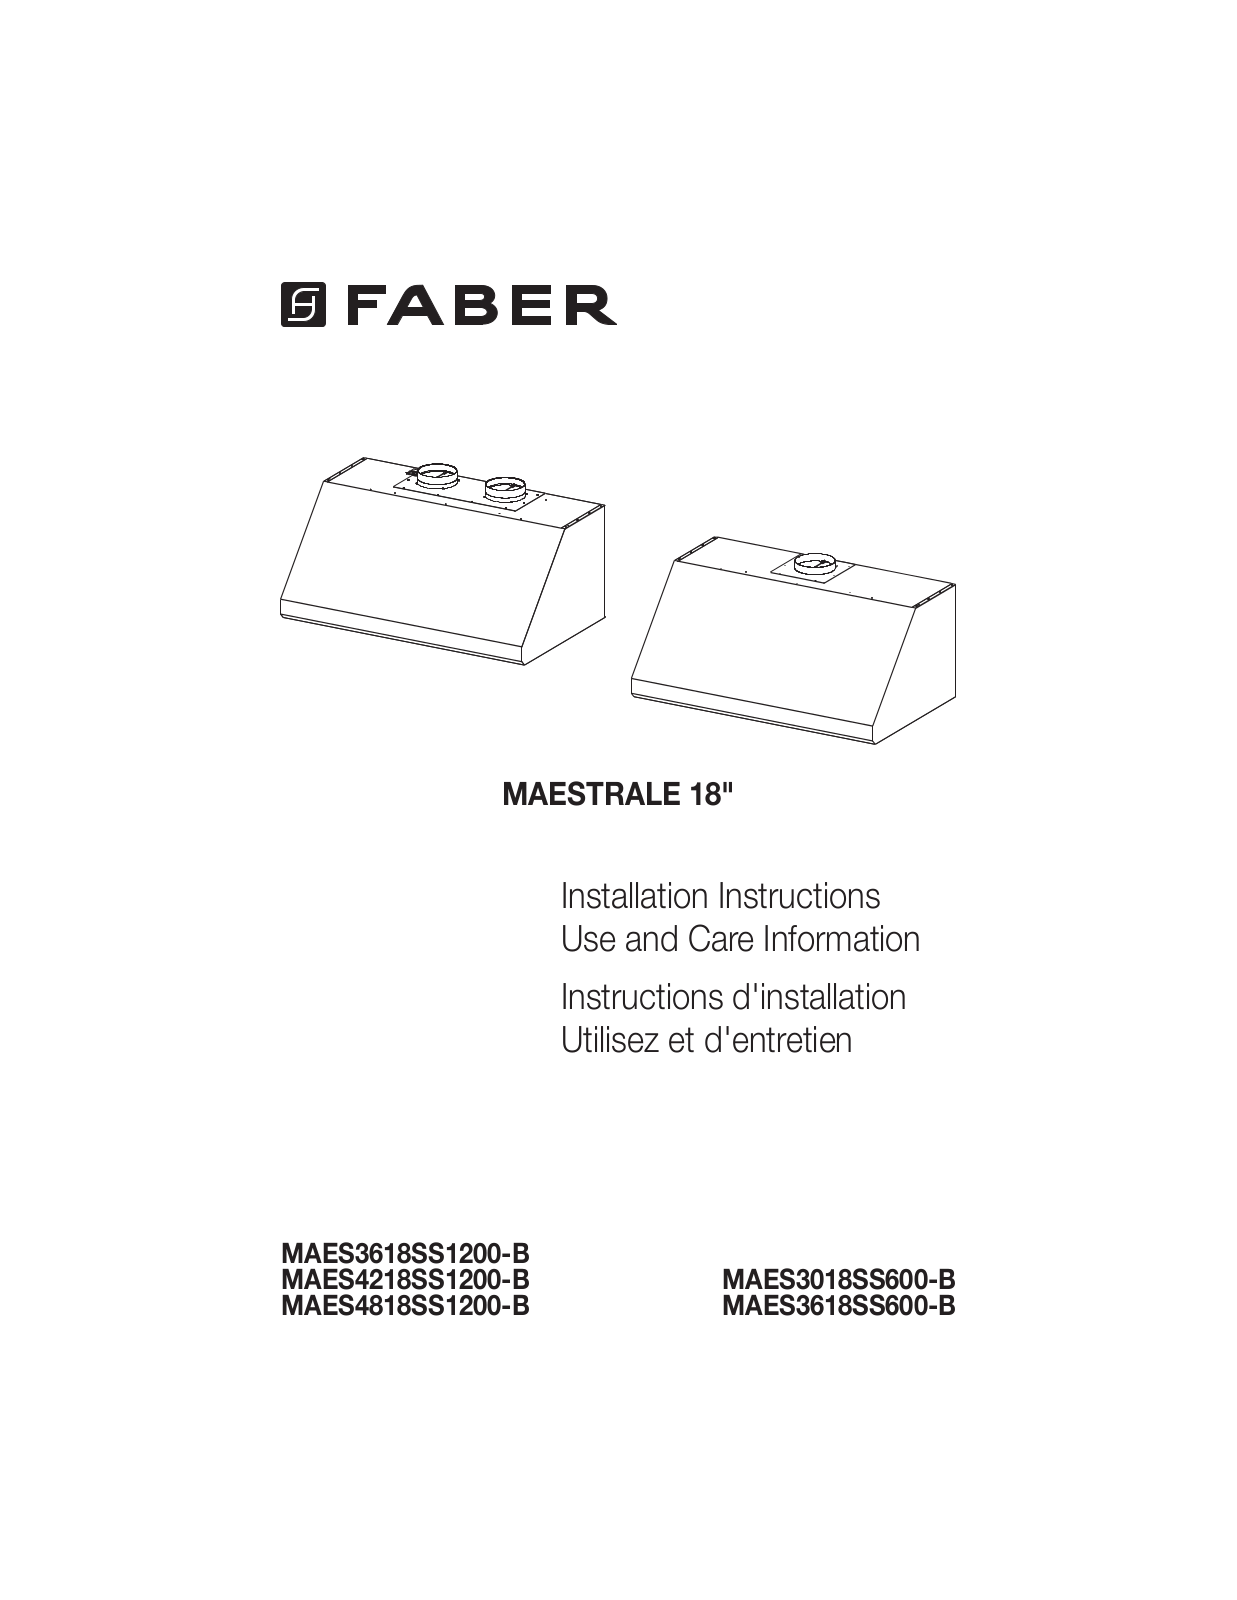 Faber MAES3618SS1200B, MAES4818SS1200B, MAES4218SS1200B, MAES3018SS600B, MAES3618SS600B Installation Manual